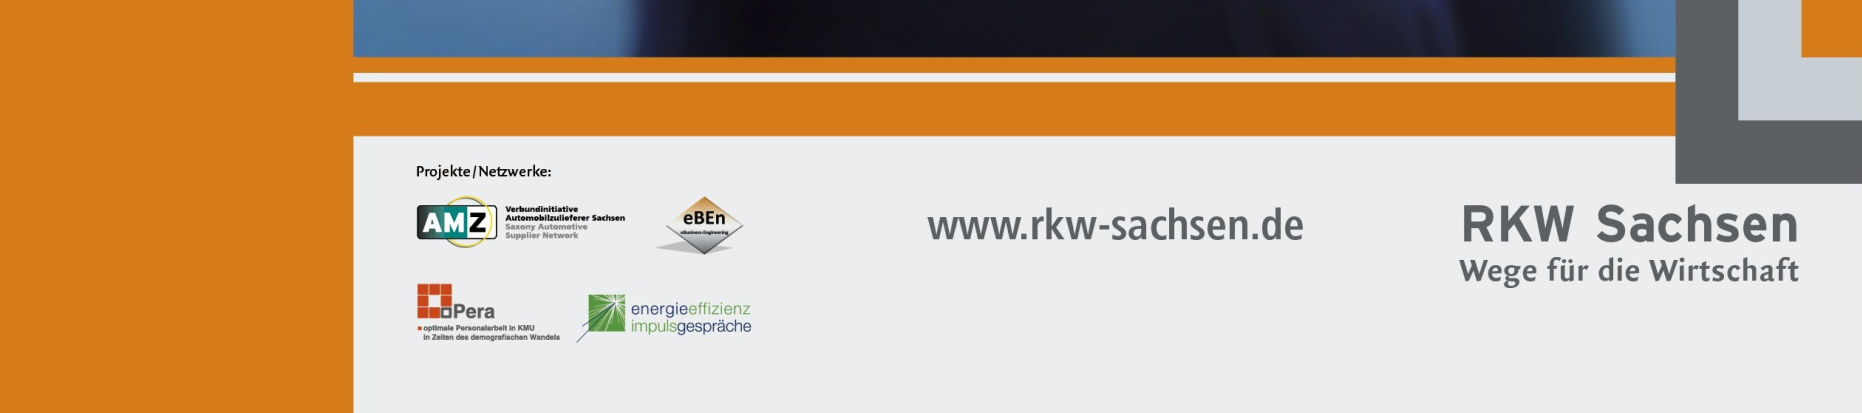 Vorstellung RKW Sachsen GmbH Über 20 Jahre Erfahrung 25.000 Kunden 26.700 Beratungsaufträge über 1.